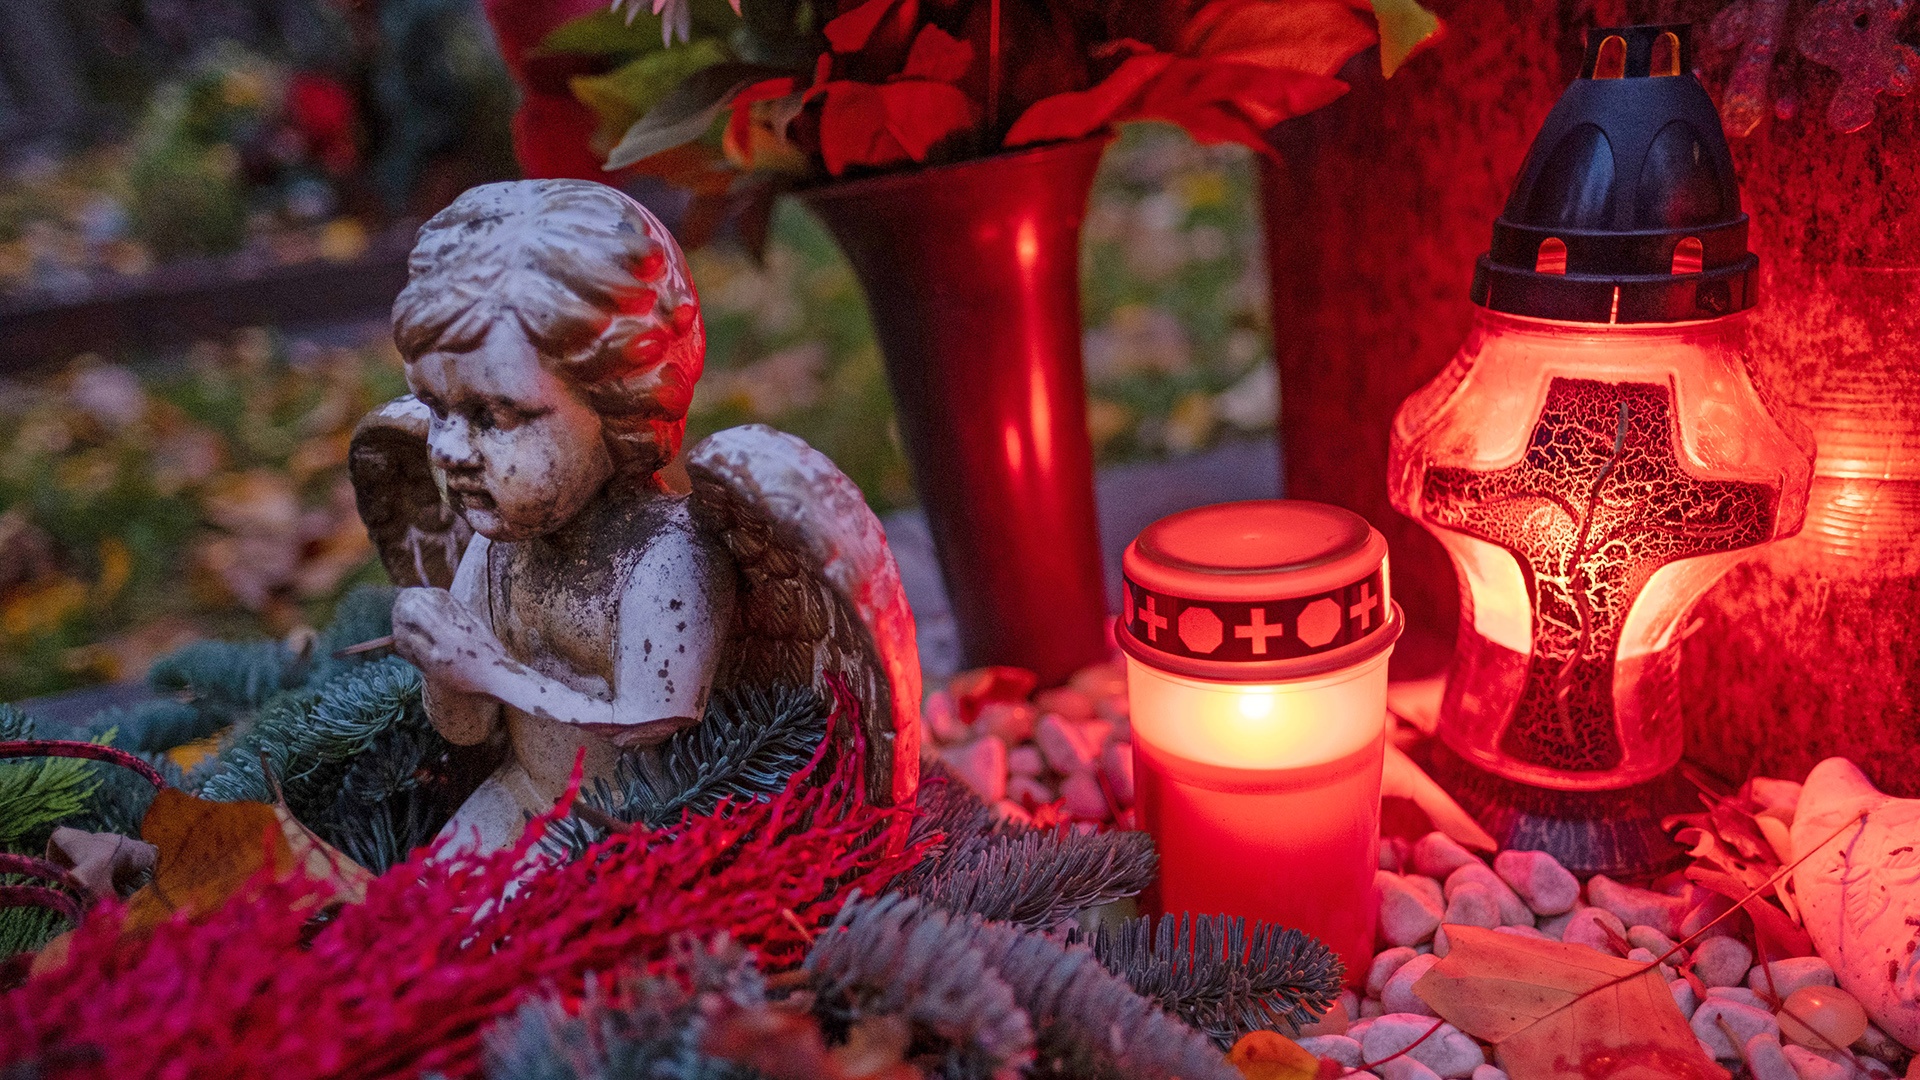 dekoriertes Grab mit einem Engel und brennende Kerzen